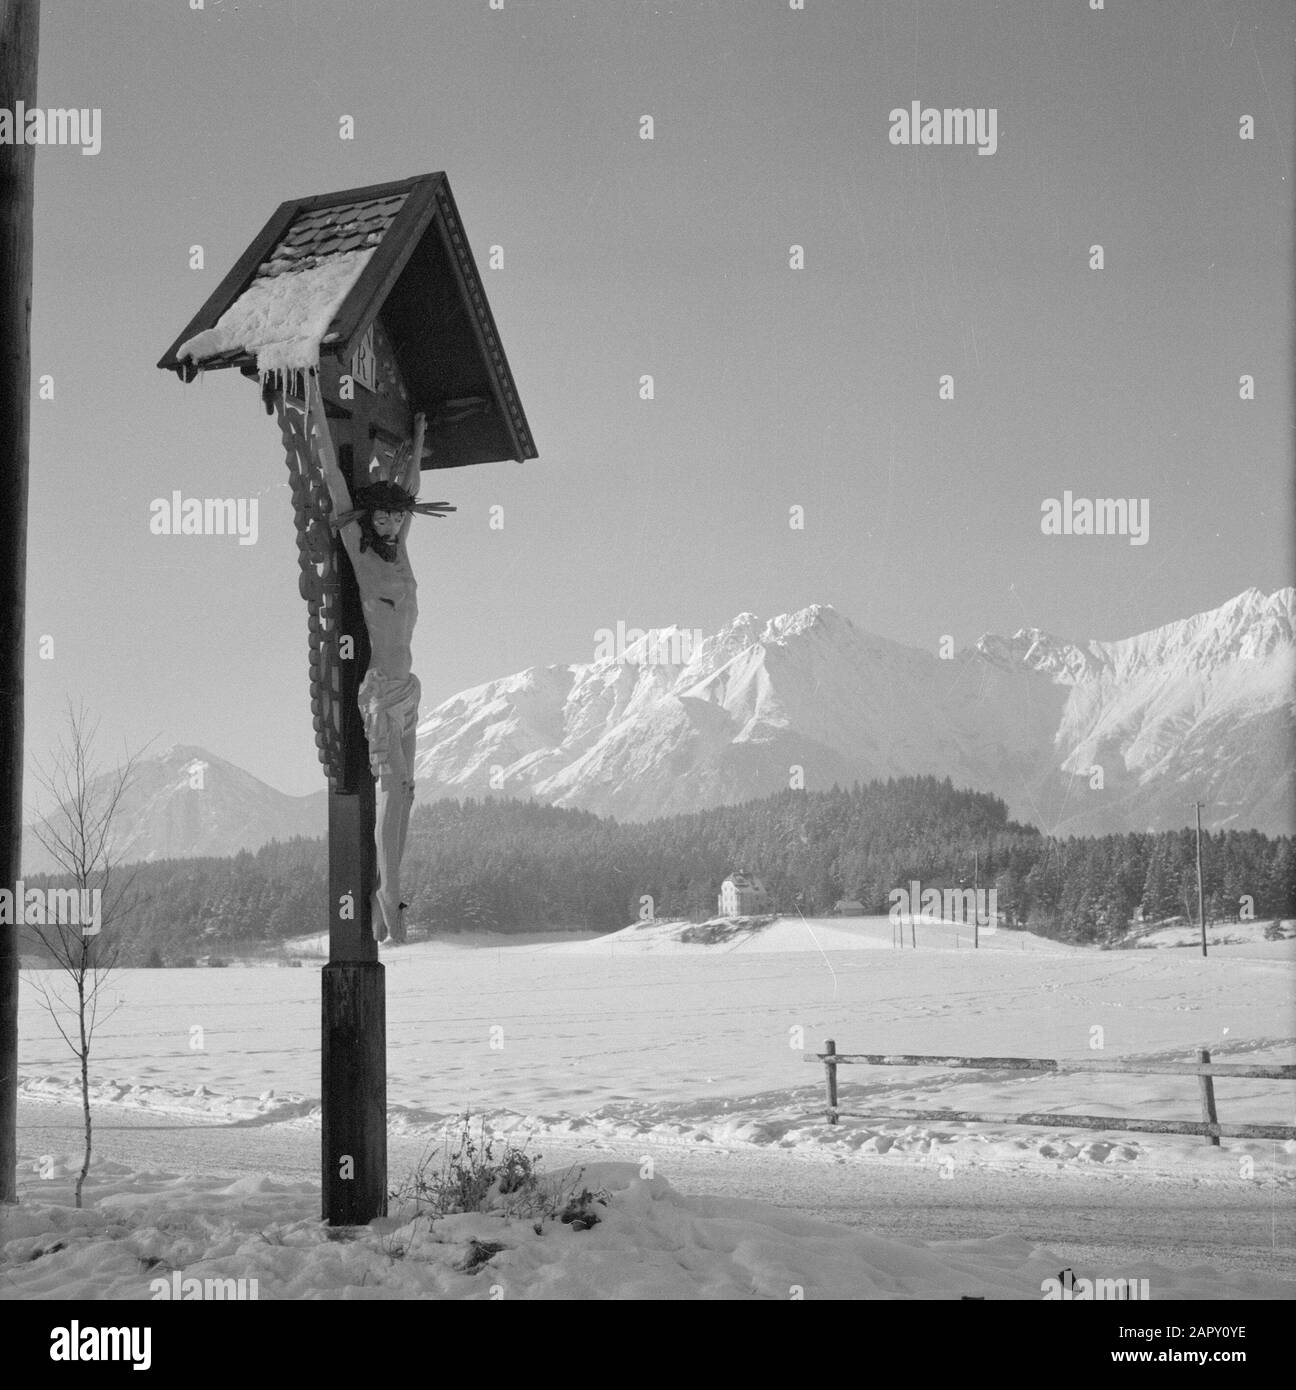 Hiver au Tyrol traversez la route dans la neige avec les montagnes Karwendel en arrière-plan Date: Janvier 1960 lieu: Autriche, Tyrol mots clés: Montagnes, paysages, neige, routes croisées, hiver Banque D'Images